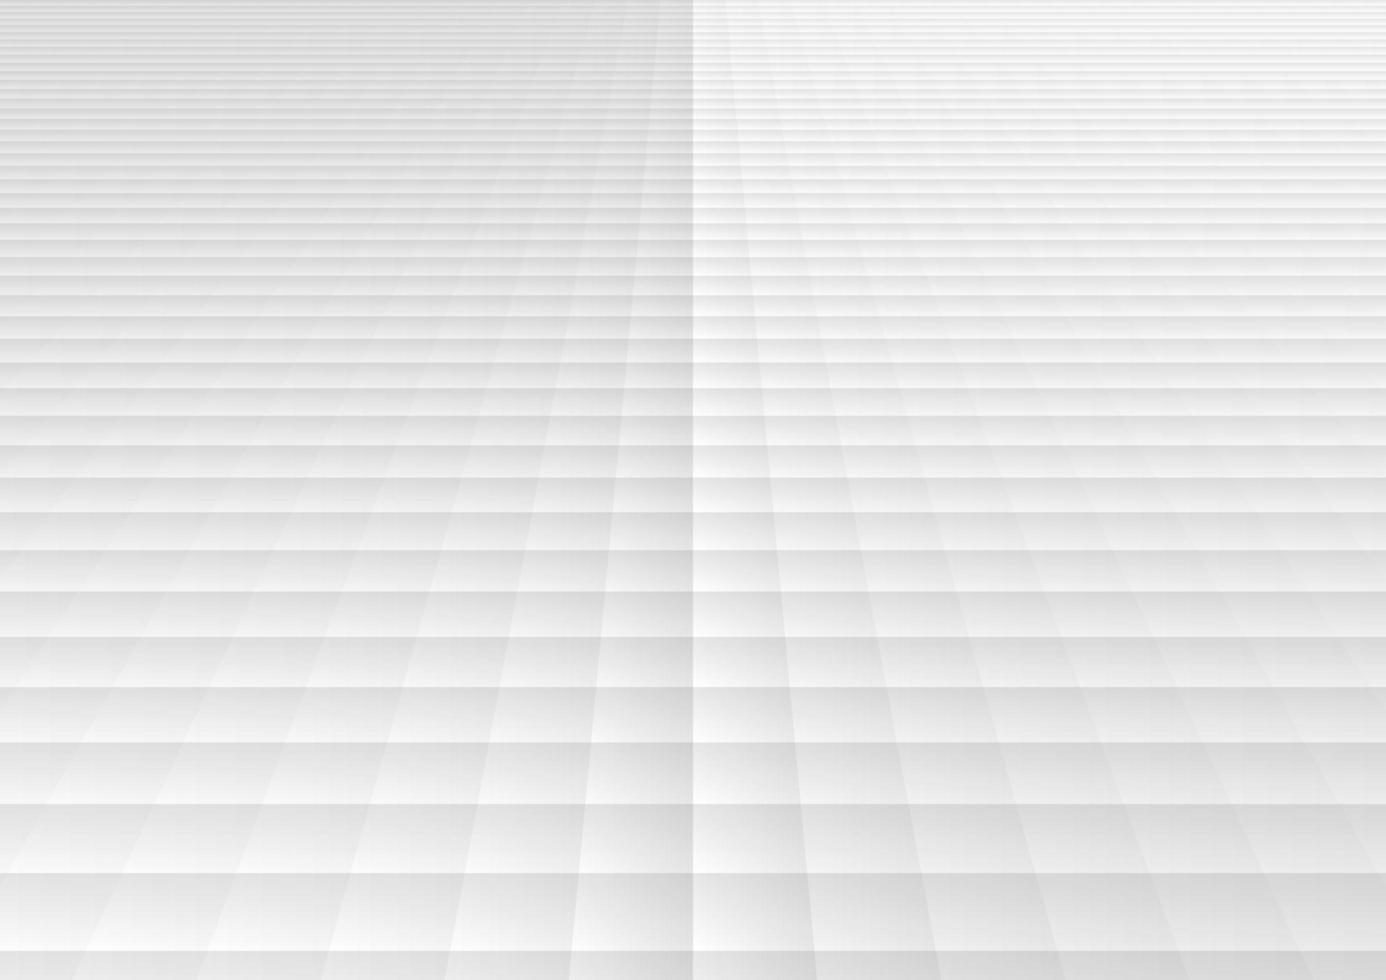 abstracte witte en grijze geometrische vierkante het perspectiefachtergrond en textuur van het rasterpatroon vector